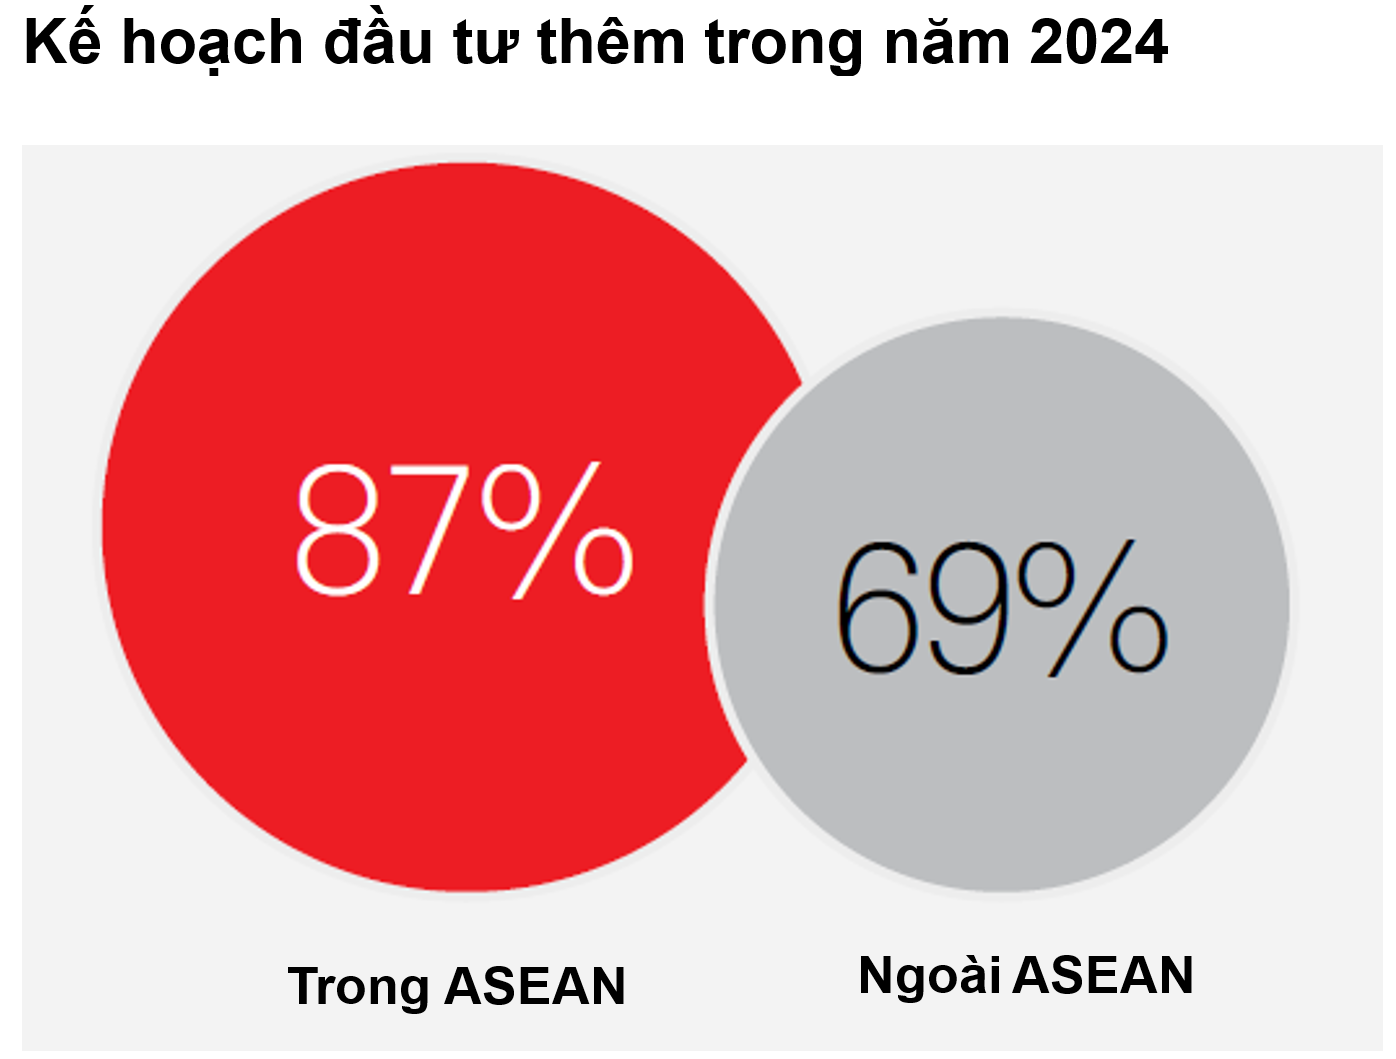 Doanh nghiệp có ý định đầu tư vào các thị trường ASEAN nhiều hơn ngoại khối